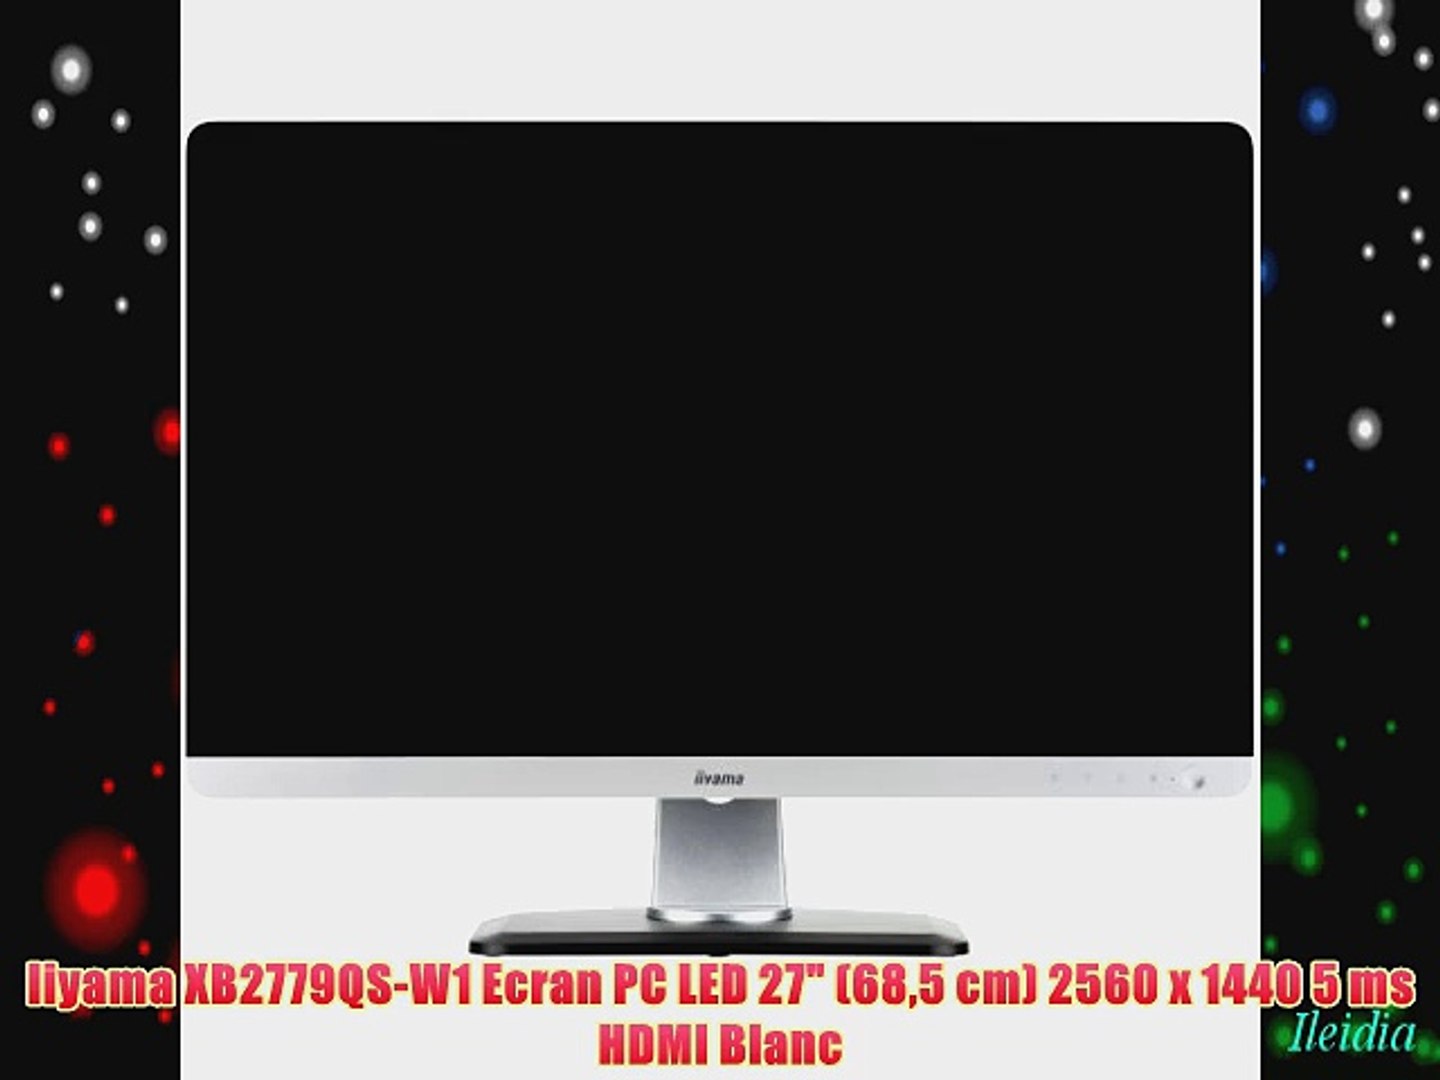 ⁣Iiyama XB2779QS-W1 Ecran PC LED 27 (685 cm) 2560 x 1440 5 ms HDMI Blanc